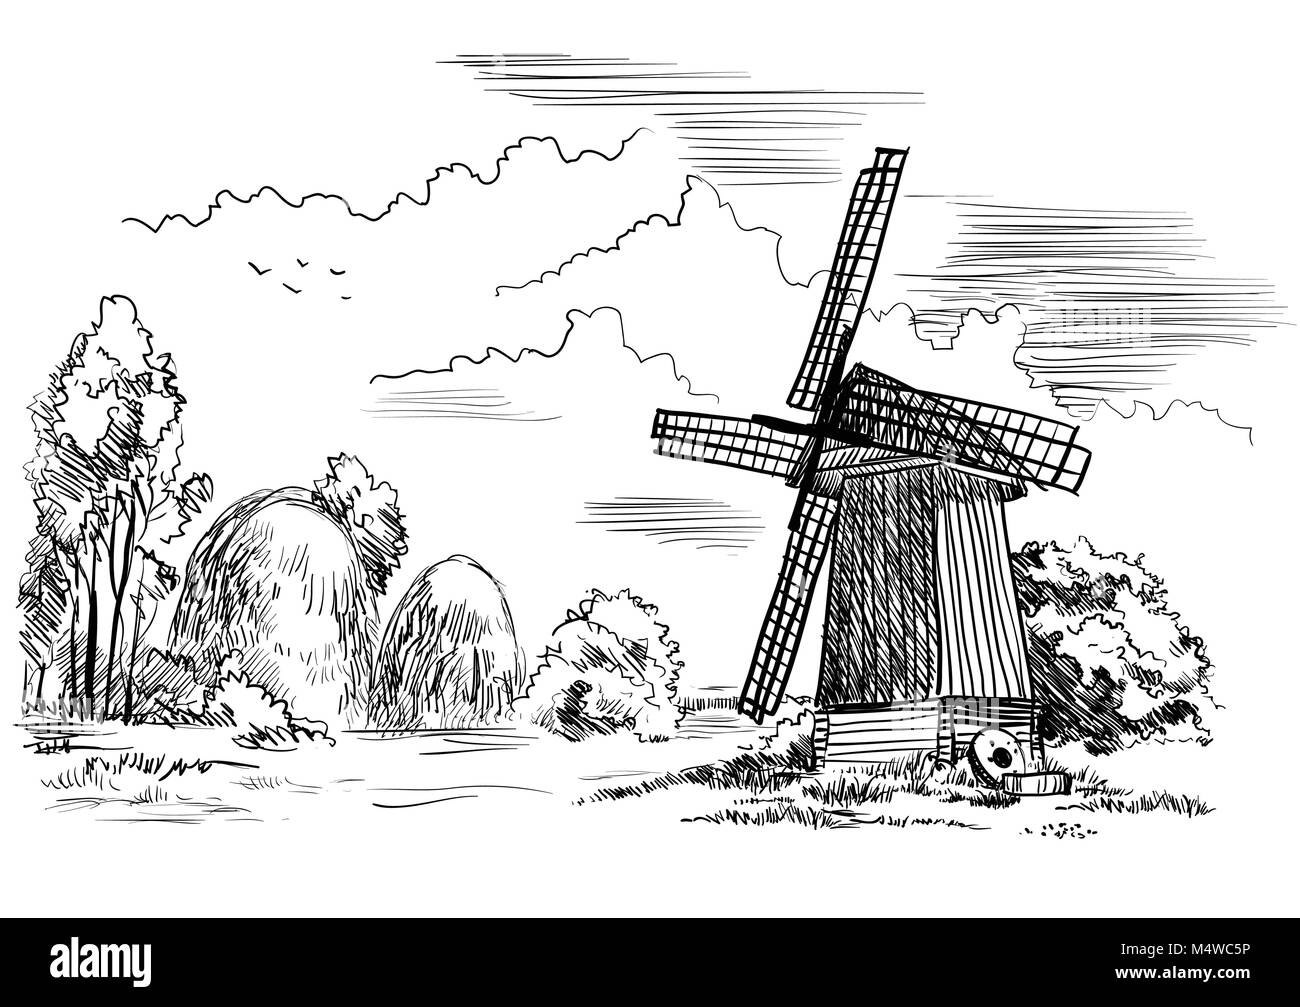 Landschaft mit einer Windmühle, Bäume und Heuballen auf Wiese, isolierte Handzeichnung Vector Illustration in schwarzer Farbe auf weißem Hintergrund Stock Vektor